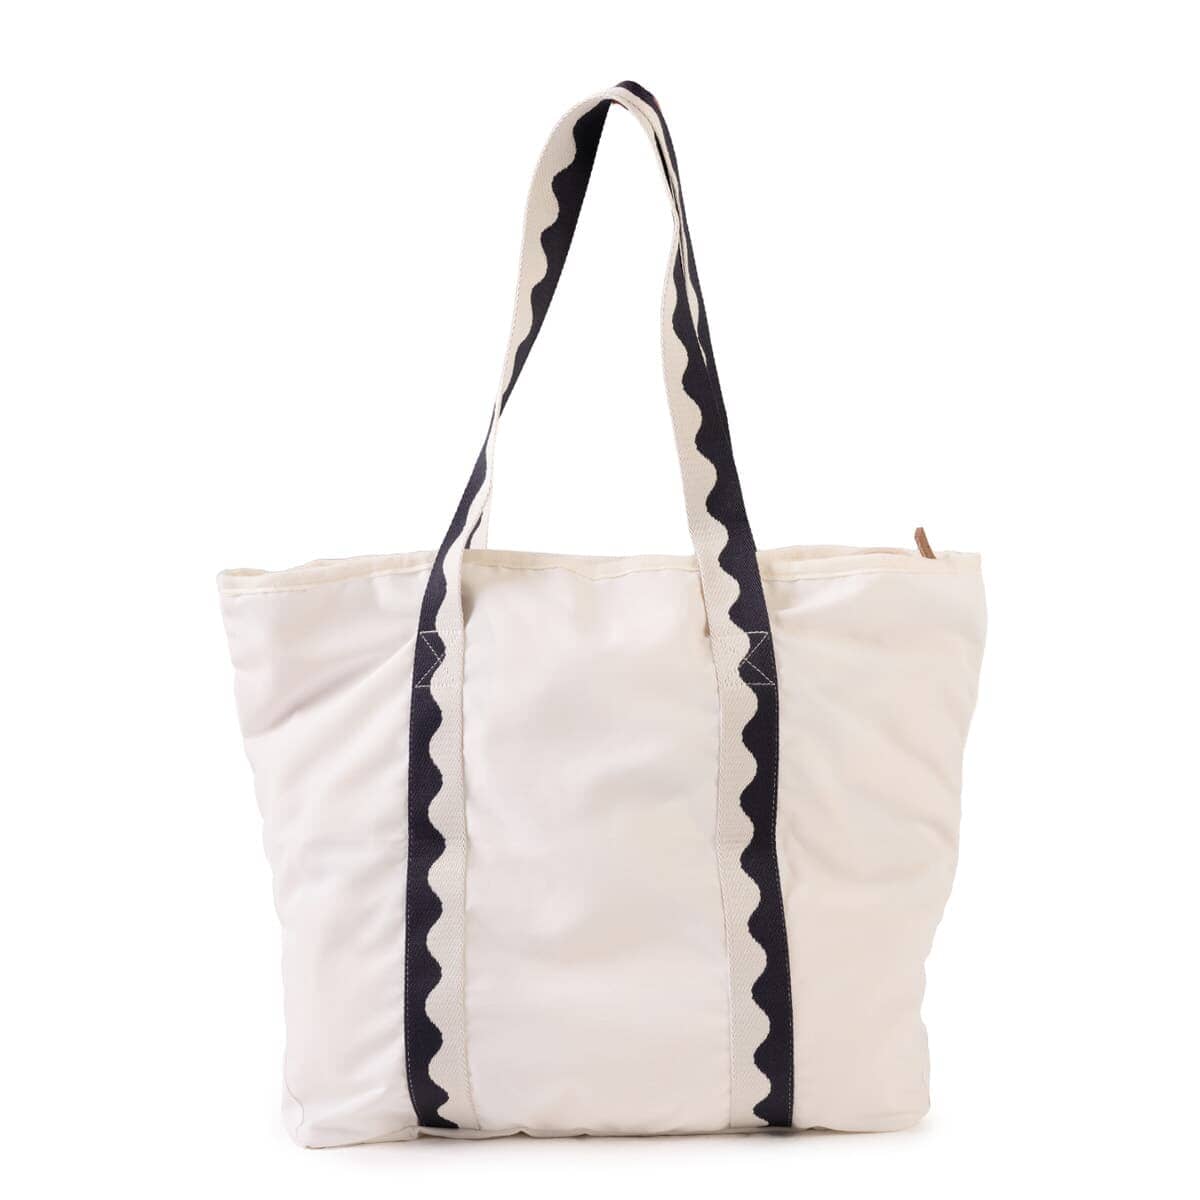 Studio image of riviera white beach bag